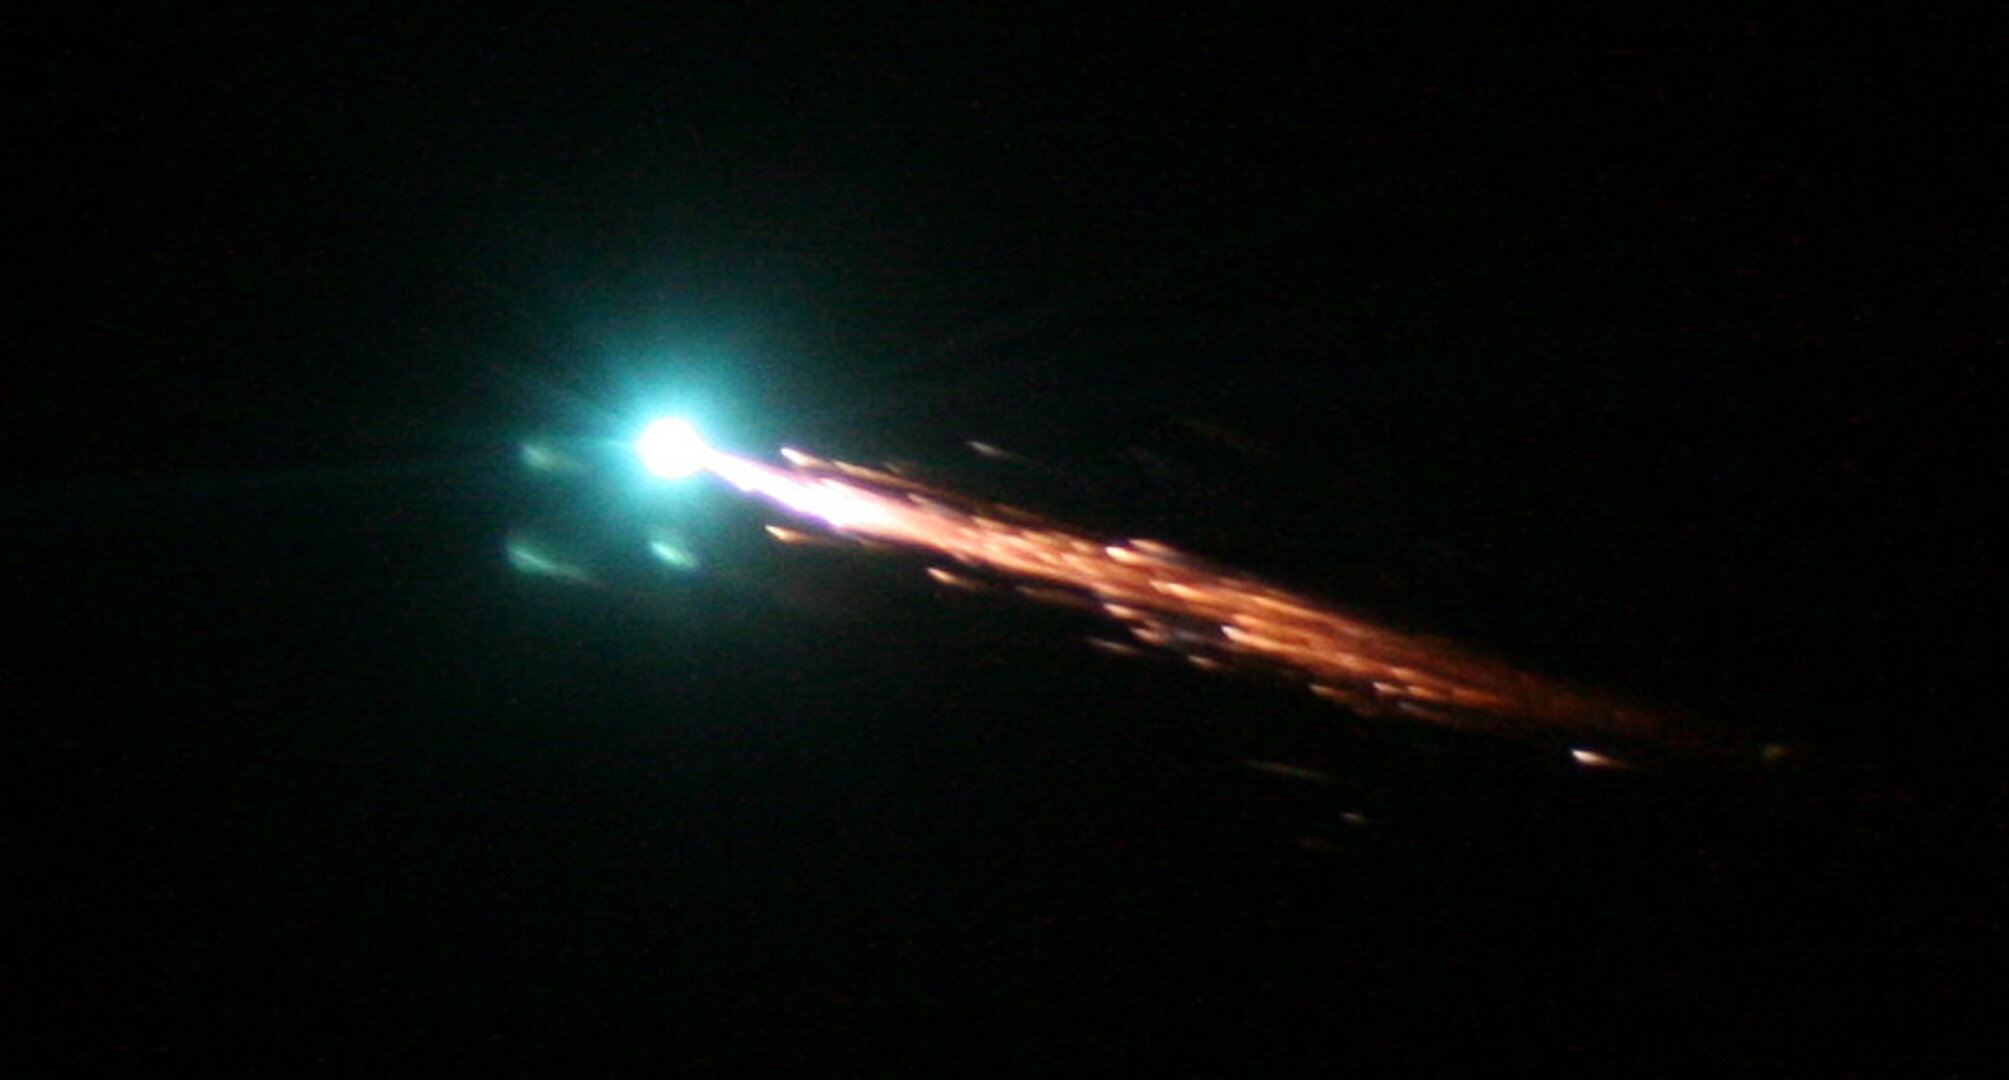 Première image de l'entrée atmosphérique de l'ATV